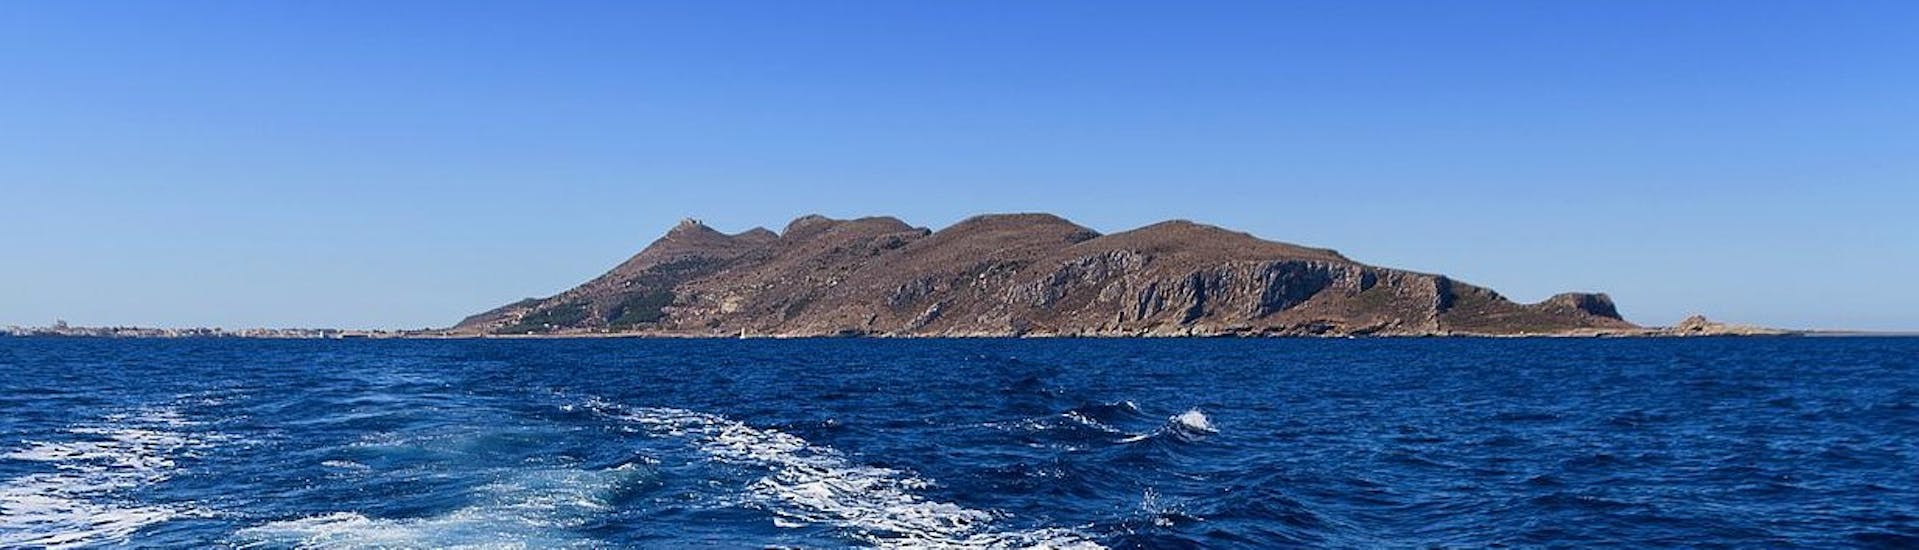 Vue imprenable sur l'archipel des Egades lors d'une balade en bateau de Castellammare del Golfo à Favignana et Levanzo avec Egadi Navigazione.